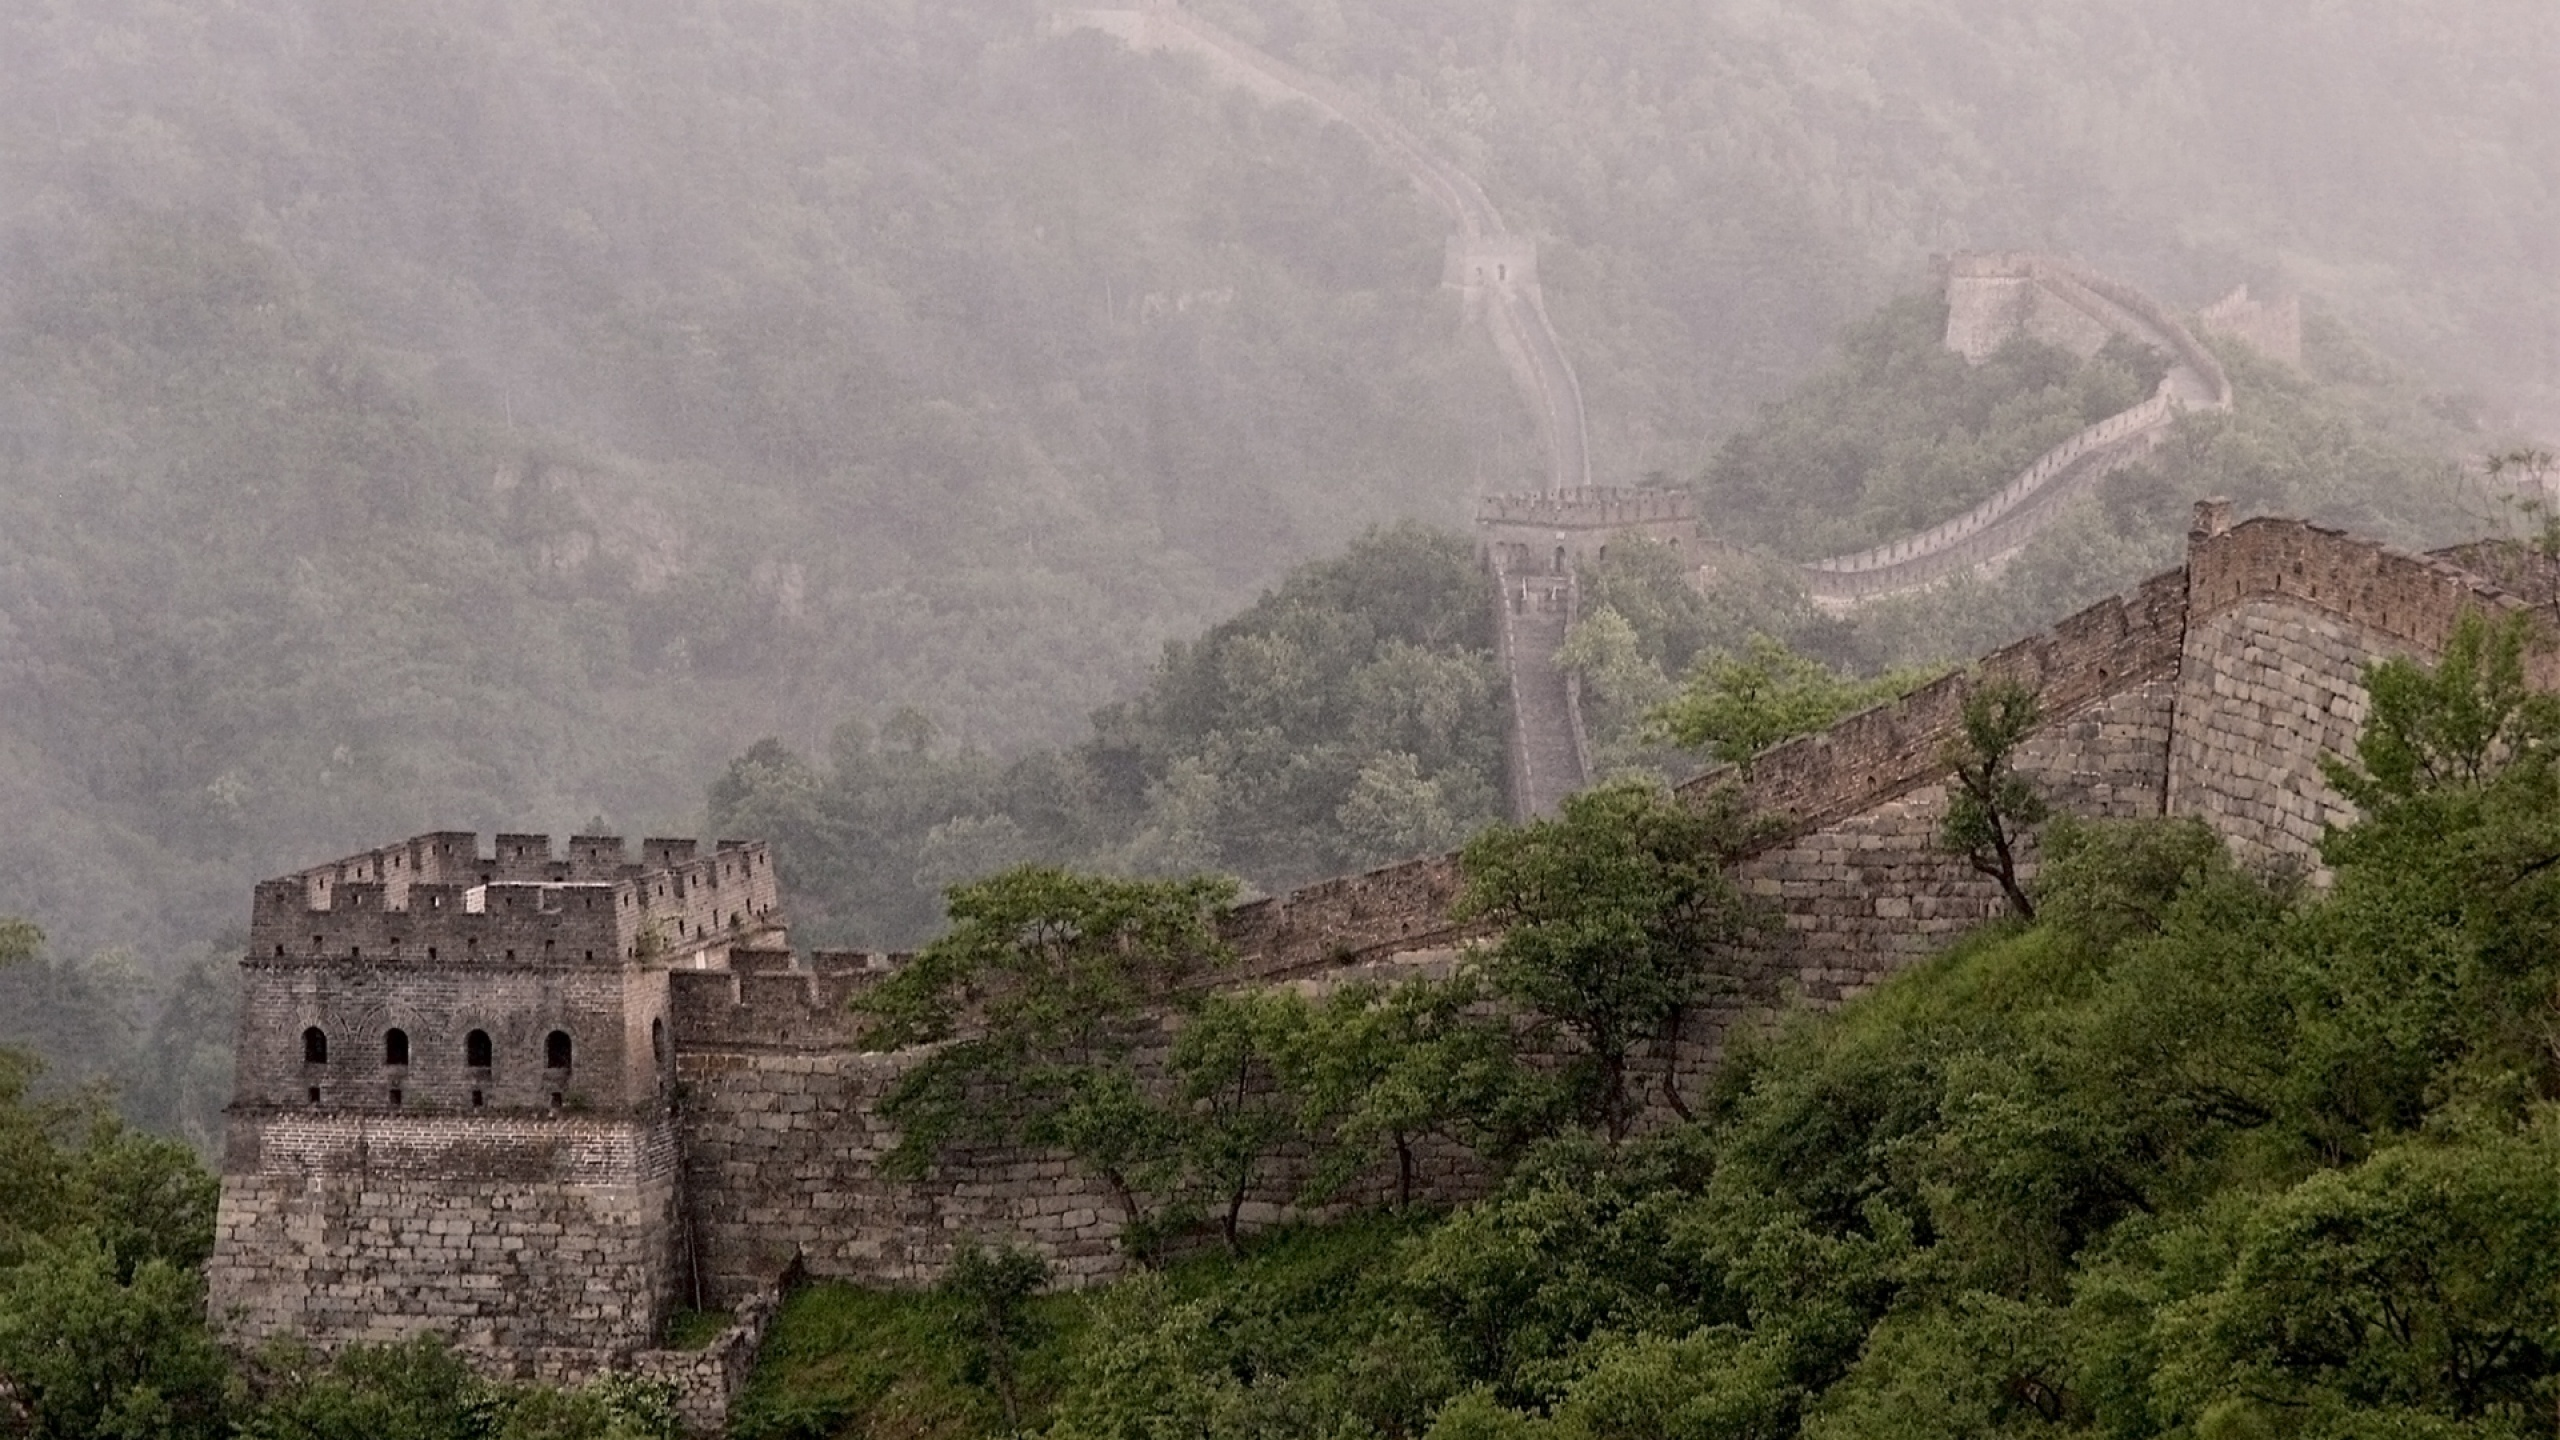 великая китайская стена, башня, облака, китай, зелень, лес, туман, пейзаж